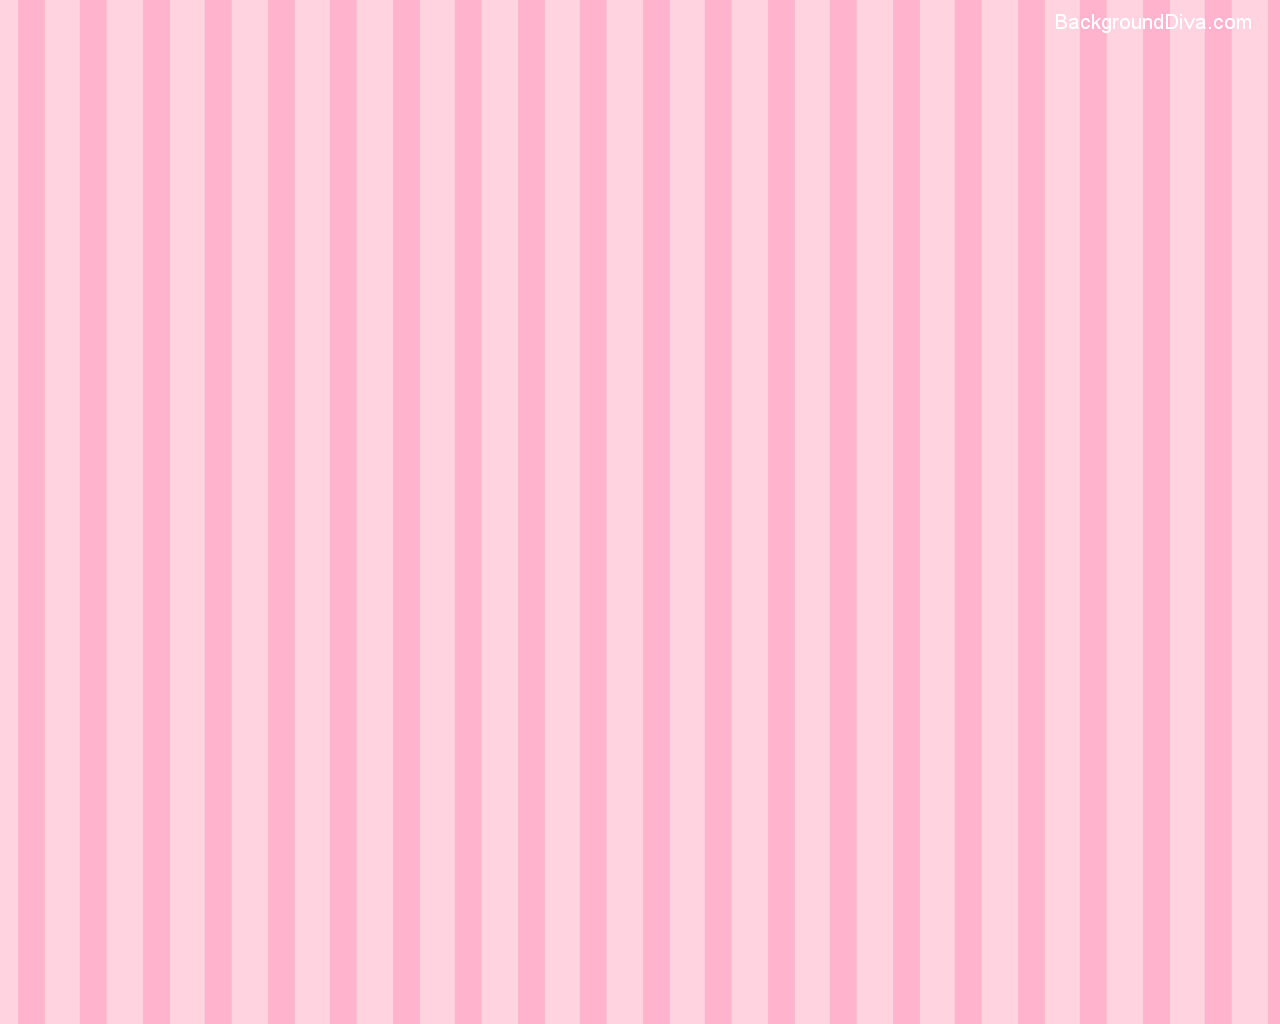 Pink Background Download: Tải về những tấm hình nền màu hồng đẹp đến ngỡ ngàng và tùy chỉnh chiếc điện thoại hoặc máy tính của bạn với chúng. Từ những tấm tự nhiên đến kiểu dáng đơn giản, bạn sẽ tìm thấy một tấm nền mà mình thích.